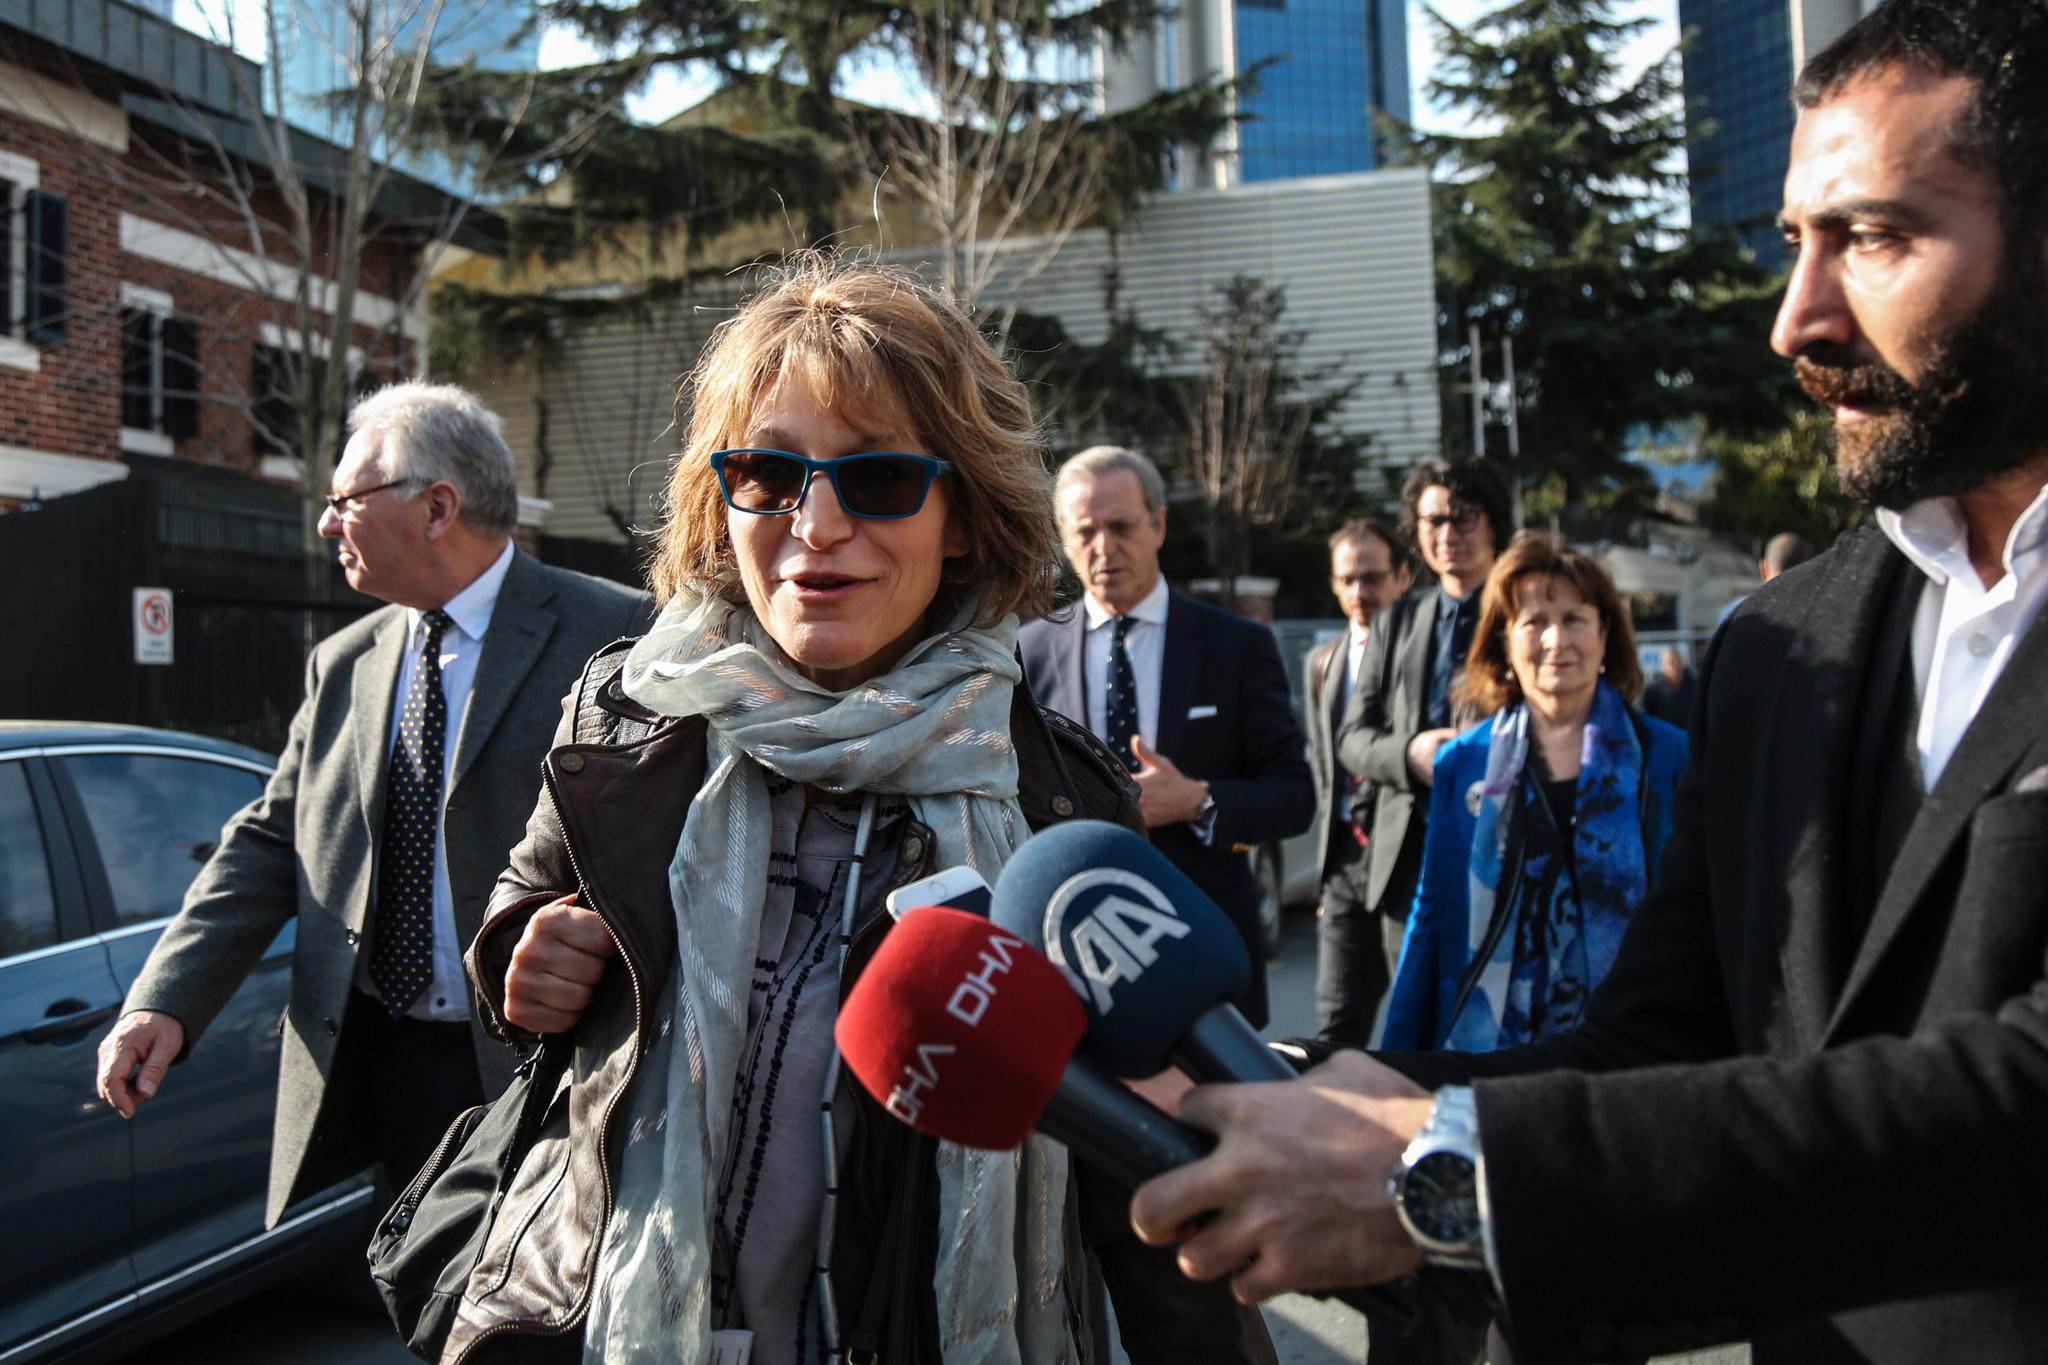 FNs spesialrapportør for utenomrettslige henrettelser, Agnes Callamard, har tilbrakt flere dager i Tyrkia som del av arbeidet med å granske drapet på Jamal Khashoggi. Foto: Cemal Yurttas/DHA via AP / NTB scanpix